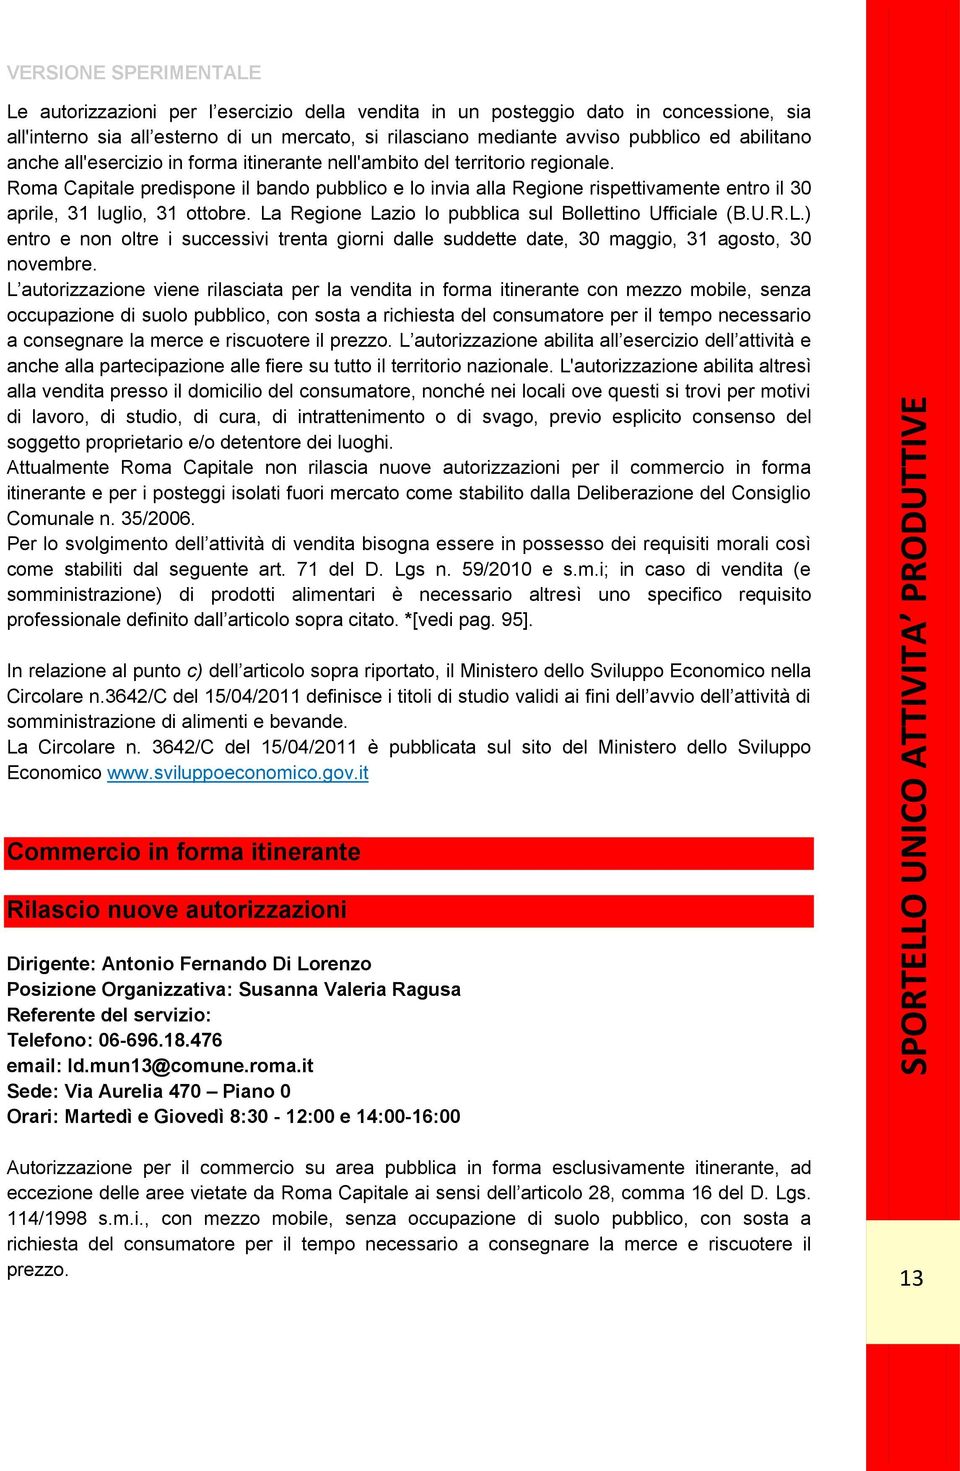 La Regione Lazio lo pubblica sul Bollettino Ufficiale (B.U.R.L.) entro e non oltre i successivi trenta giorni dalle suddette date, 30 maggio, 31 agosto, 30 novembre.